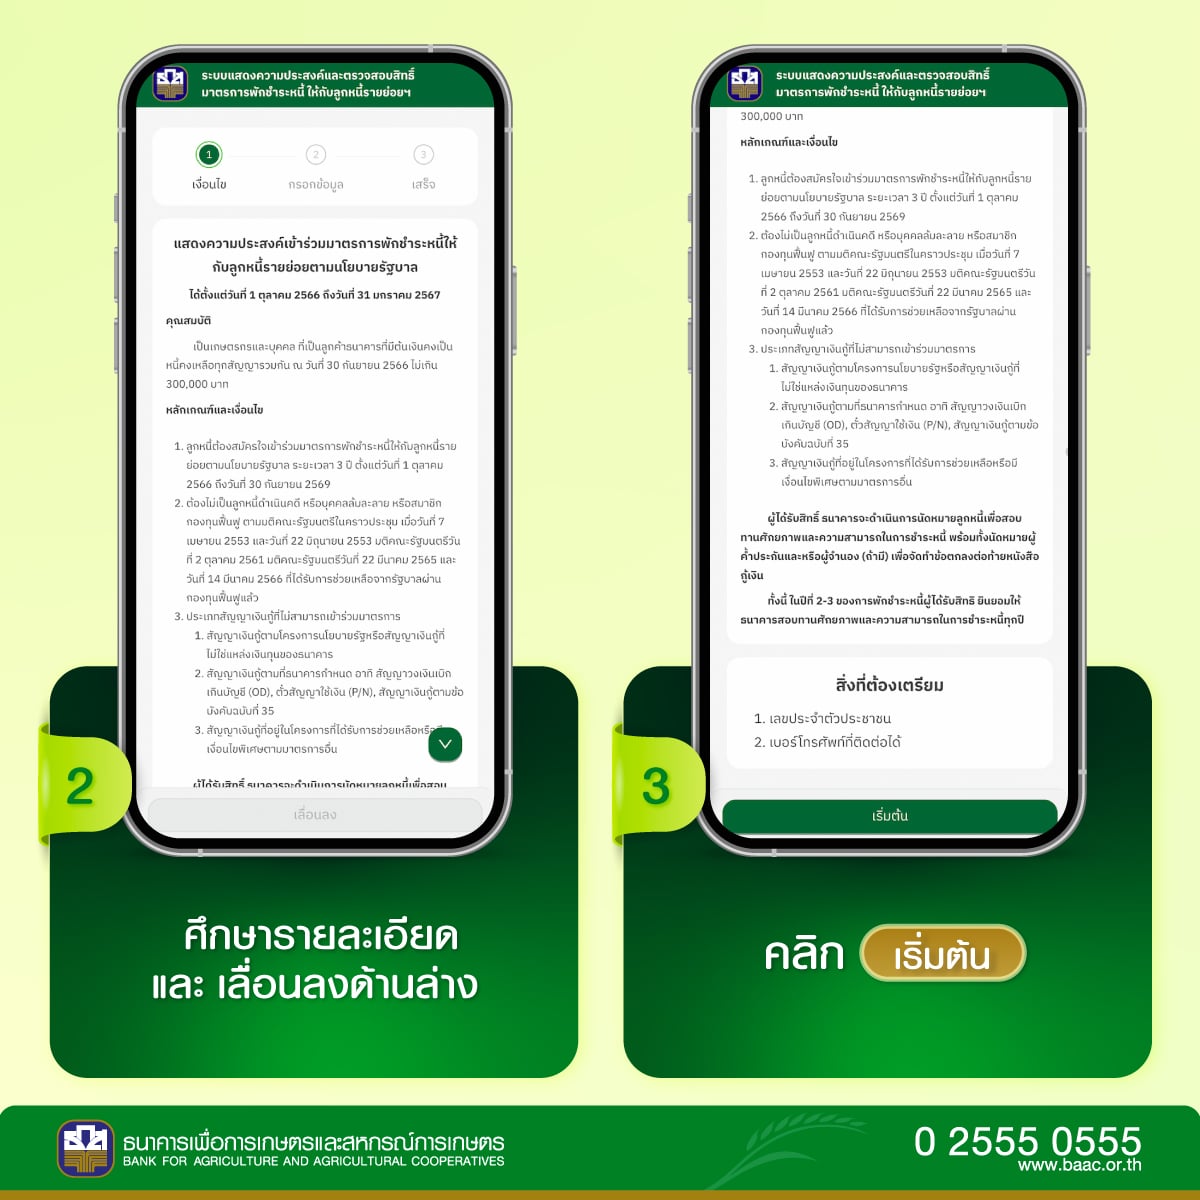 วิธีลงทะเบียน 'พักชําระหนี้เกษตร' ธกส 2566 ทำเองผ่านแอป Baac | Thaiger  ข่าวไทย